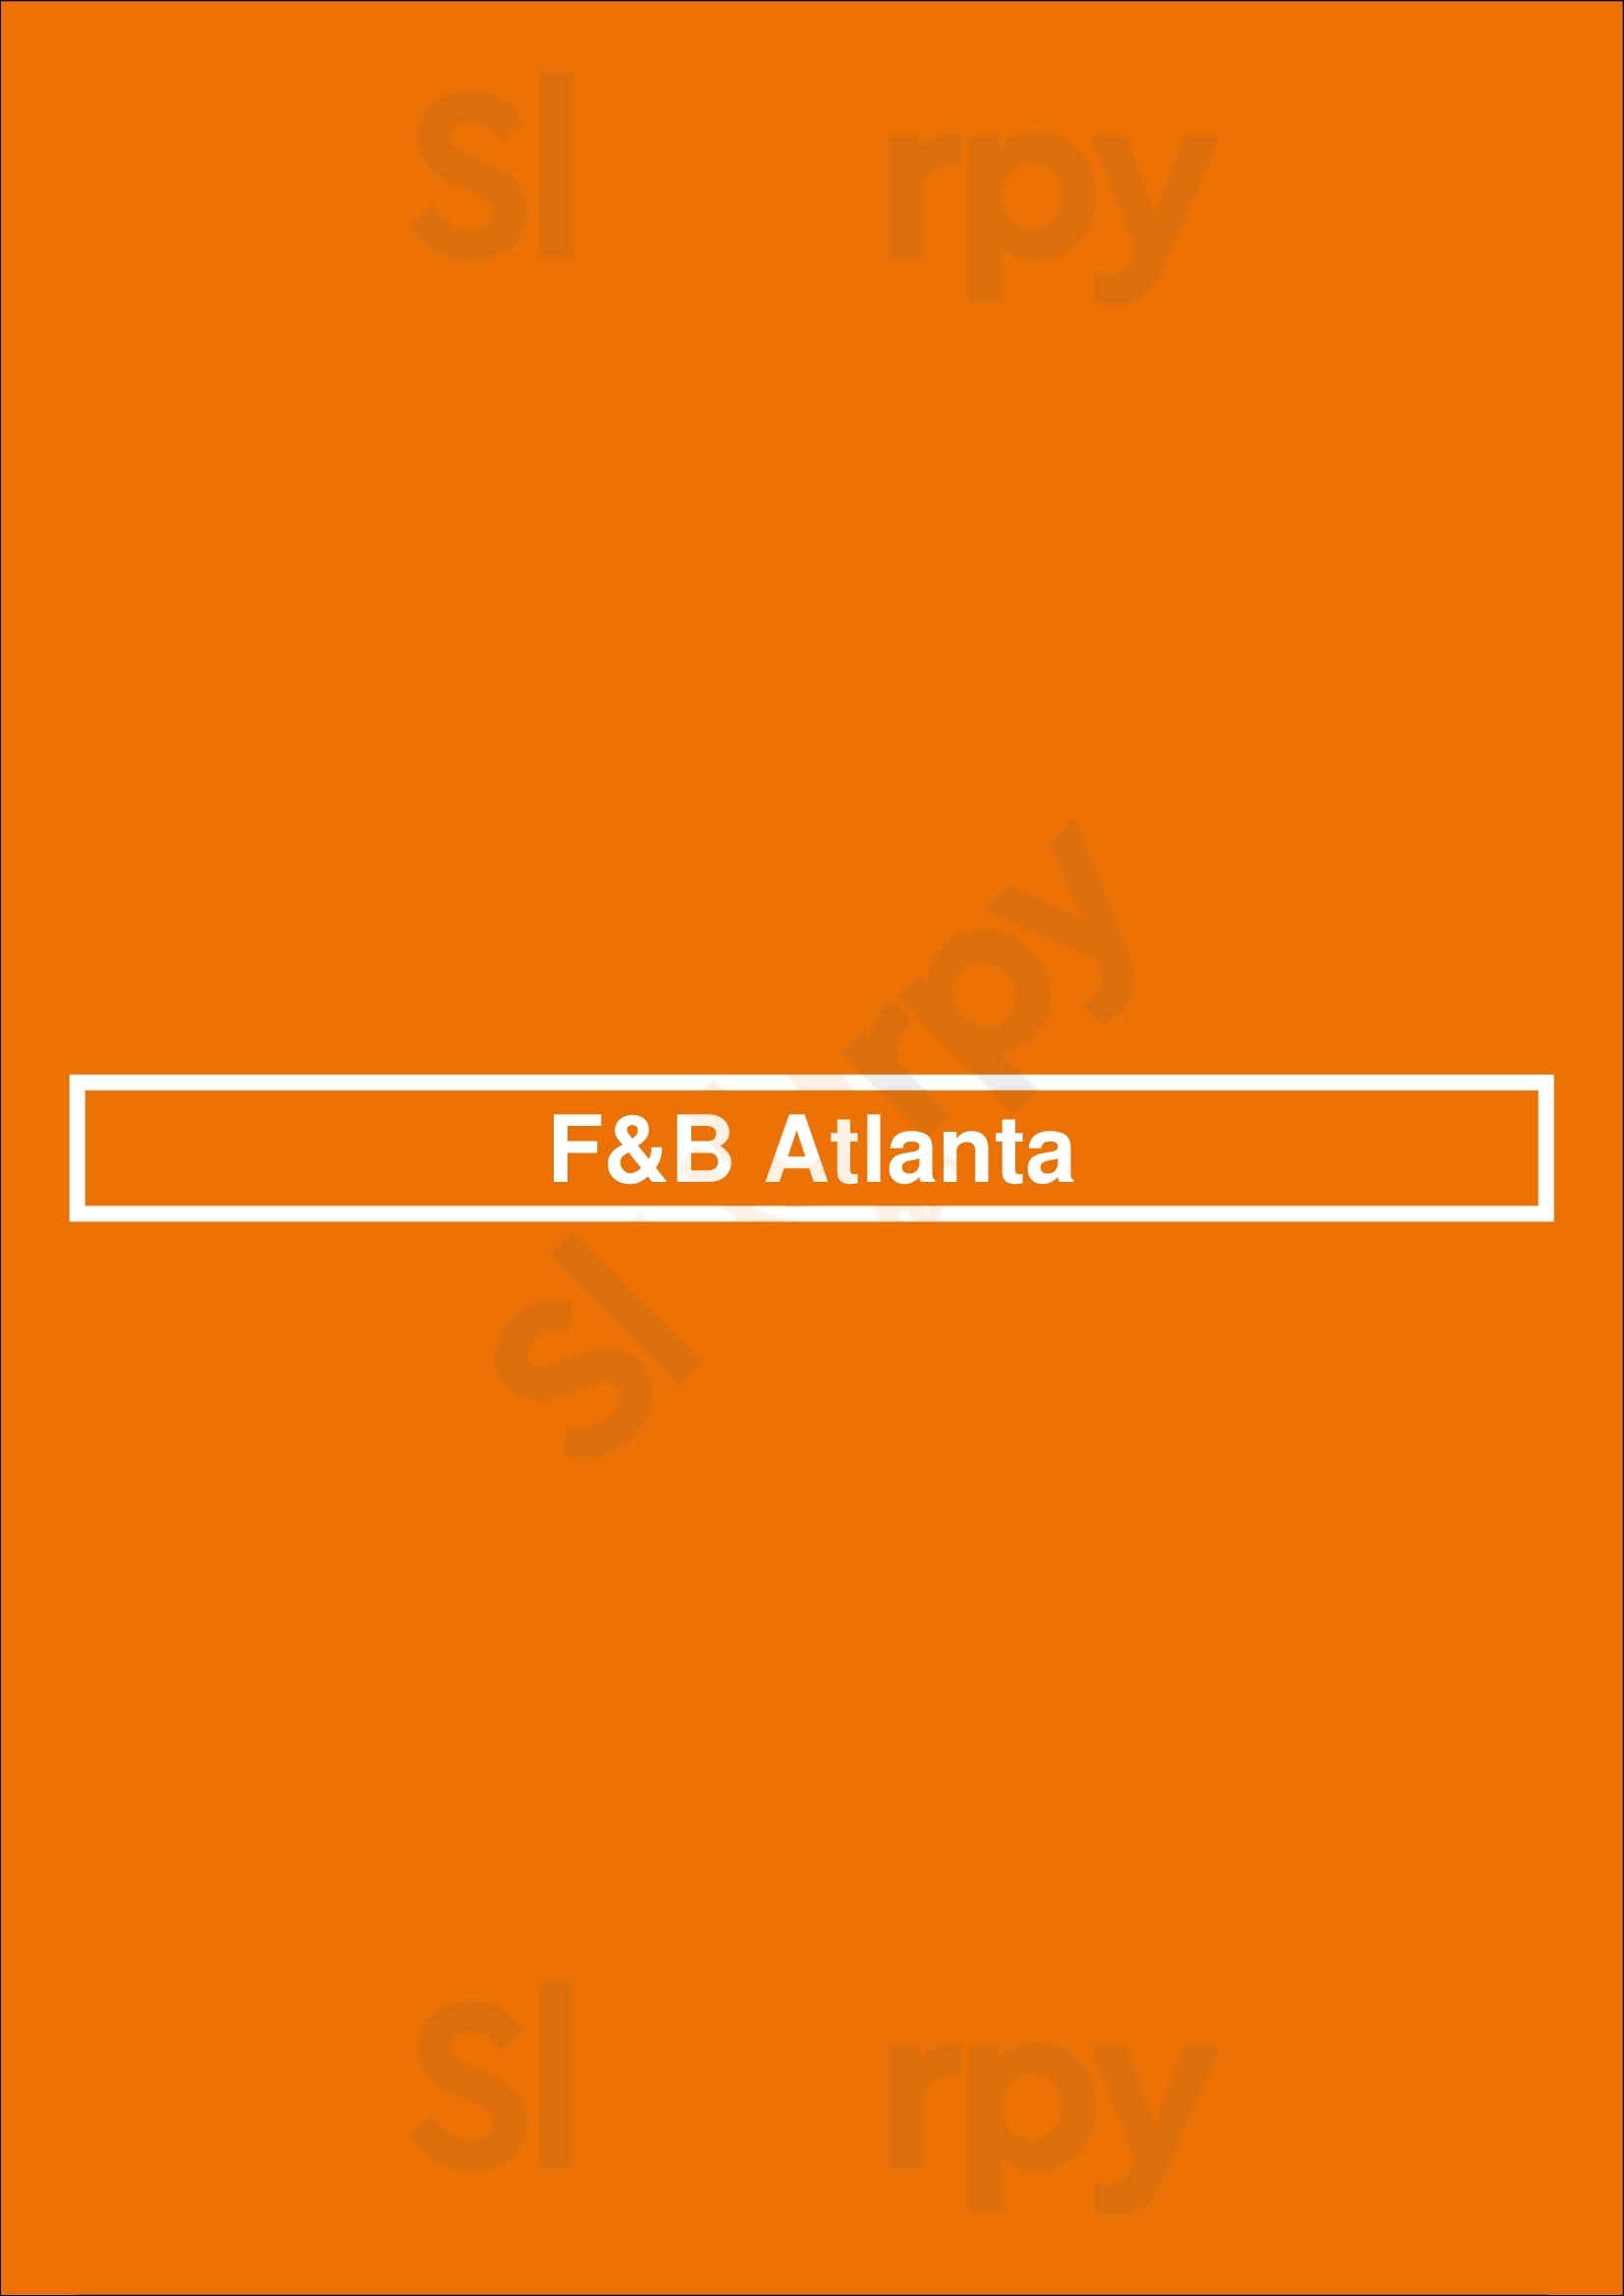 F&b Atlanta Atlanta Menu - 1